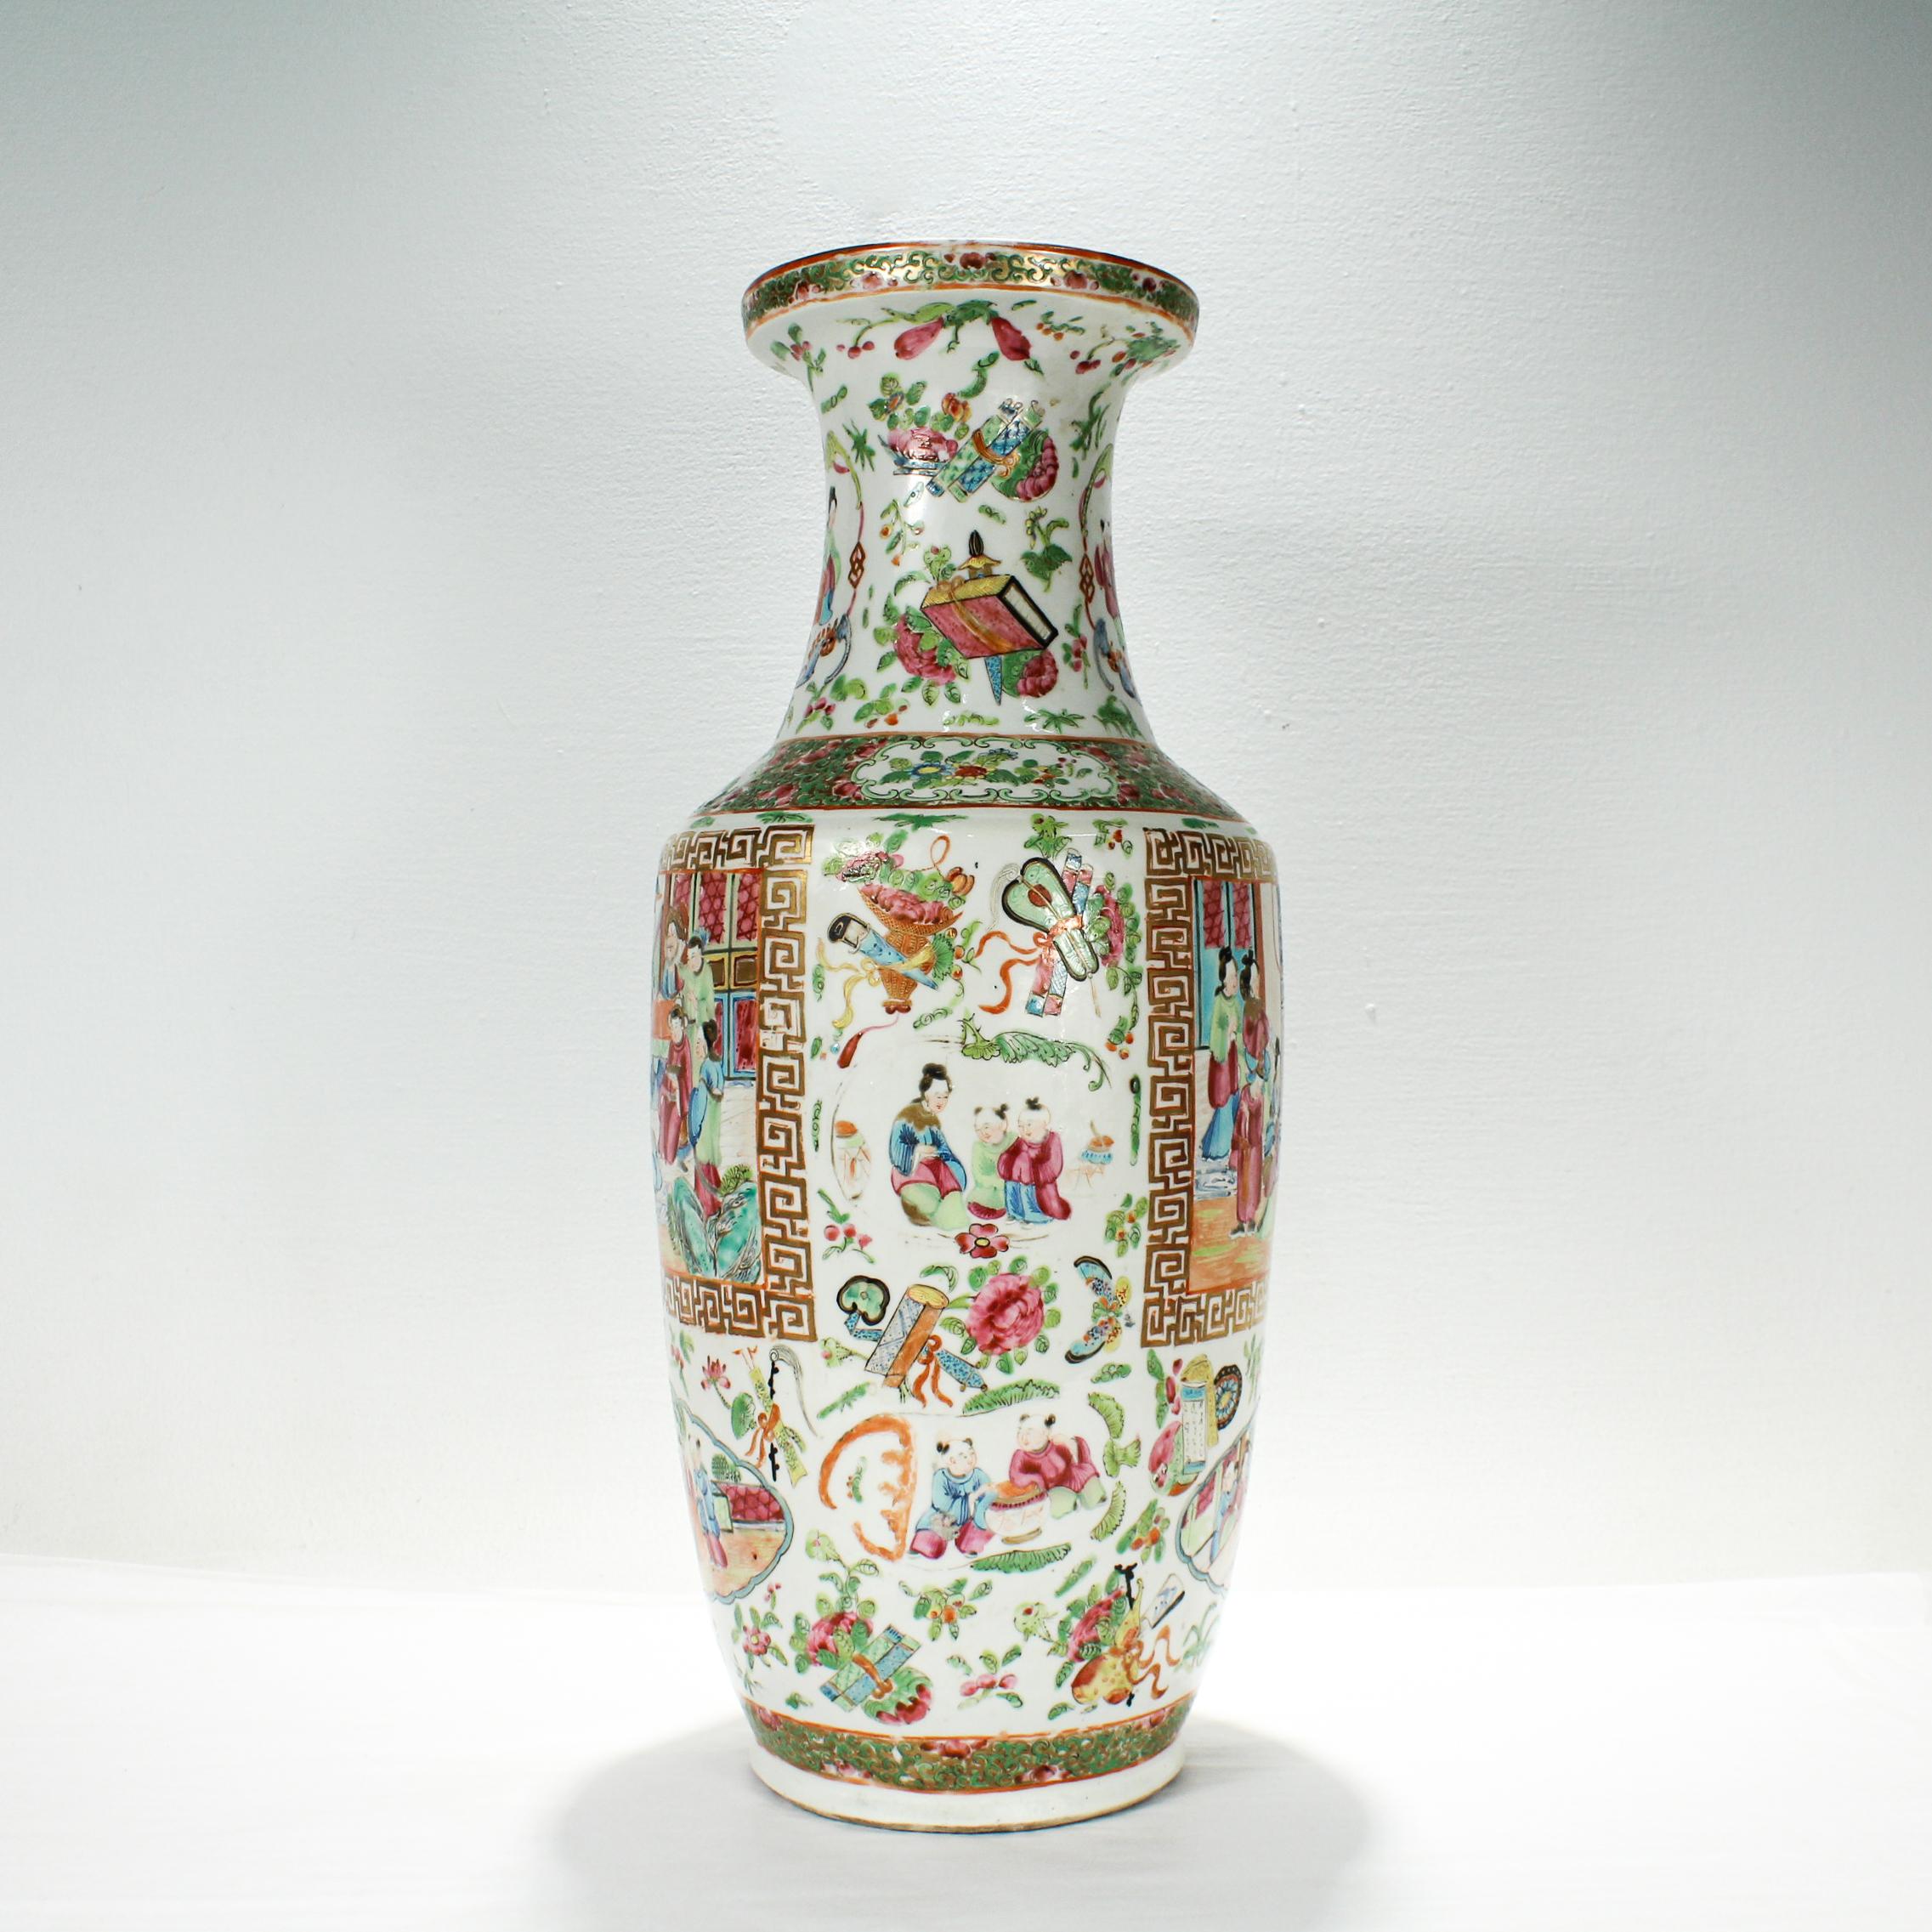 Un grand vase ancien en porcelaine chinoise.

Dans le style Rose Mandarine (Famille Rose).
 
Décorée tout au long de l'ouvrage de diverses scènes détaillées de personnes et de plantes. Le corps du vase représente principalement des personnes et,